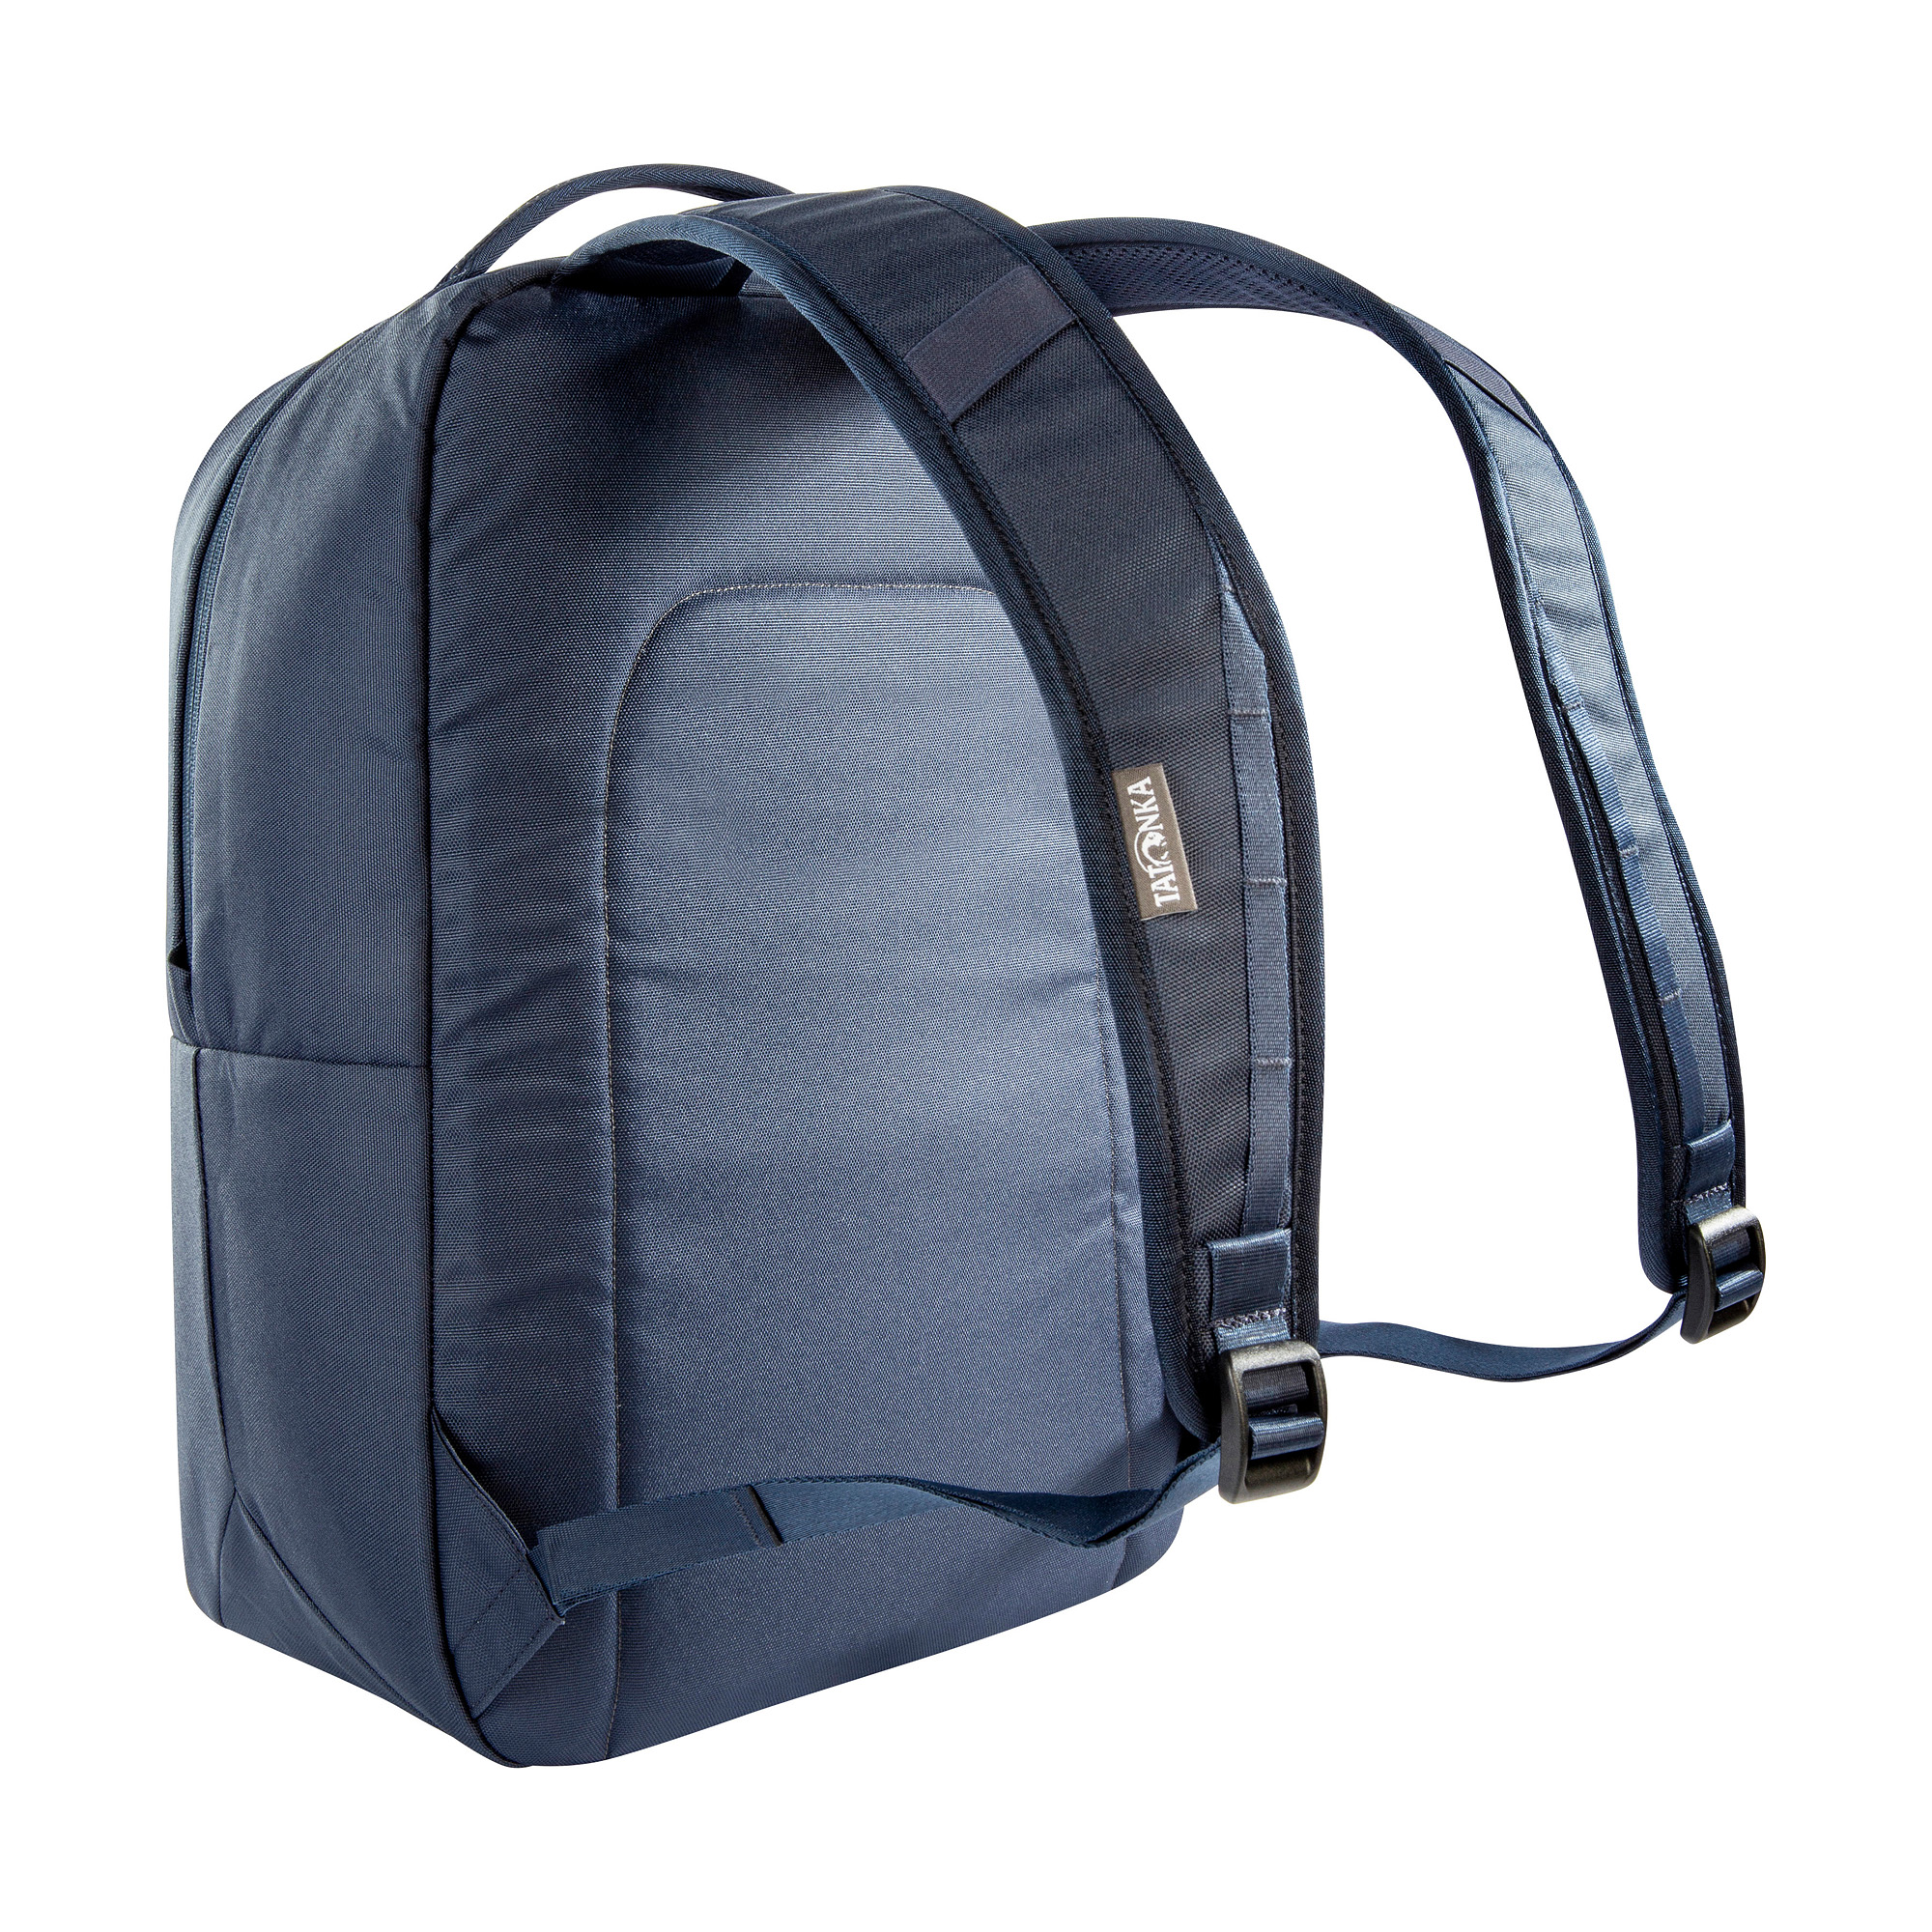 Tatonka Cooler Backpack navy blau Tagesrucksäcke 4013236384406